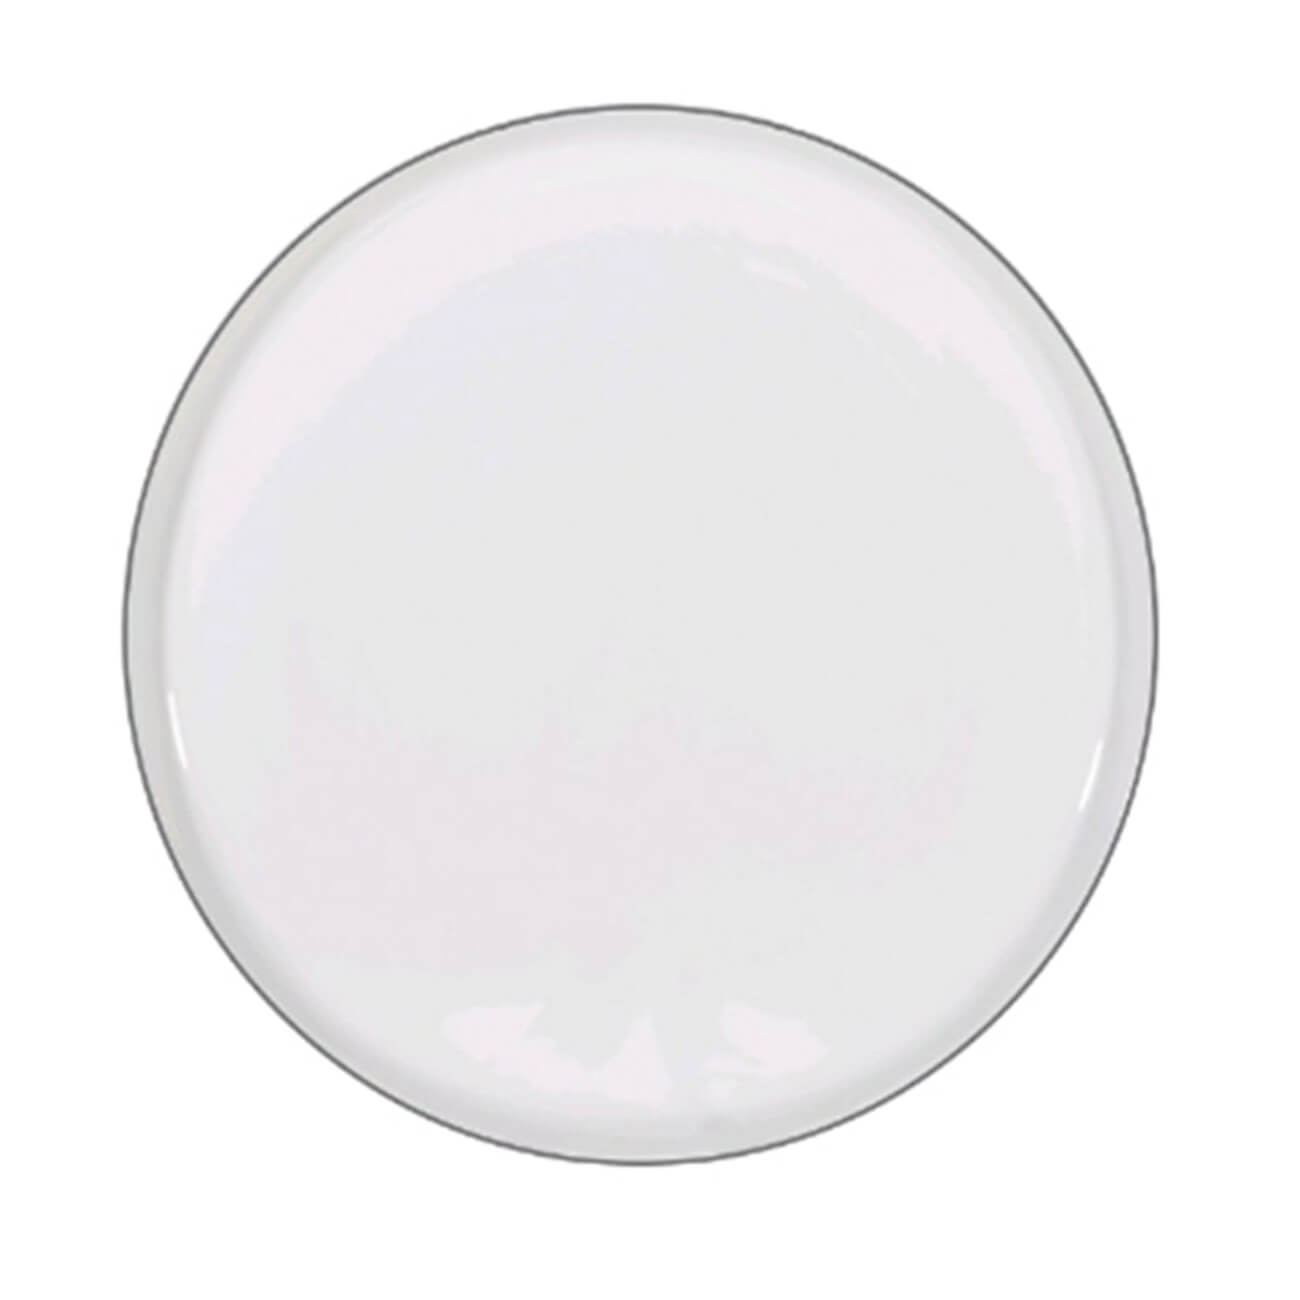 Тарелка десертная, 20 см, 2 шт, фарфор F, белая, Ideal silver